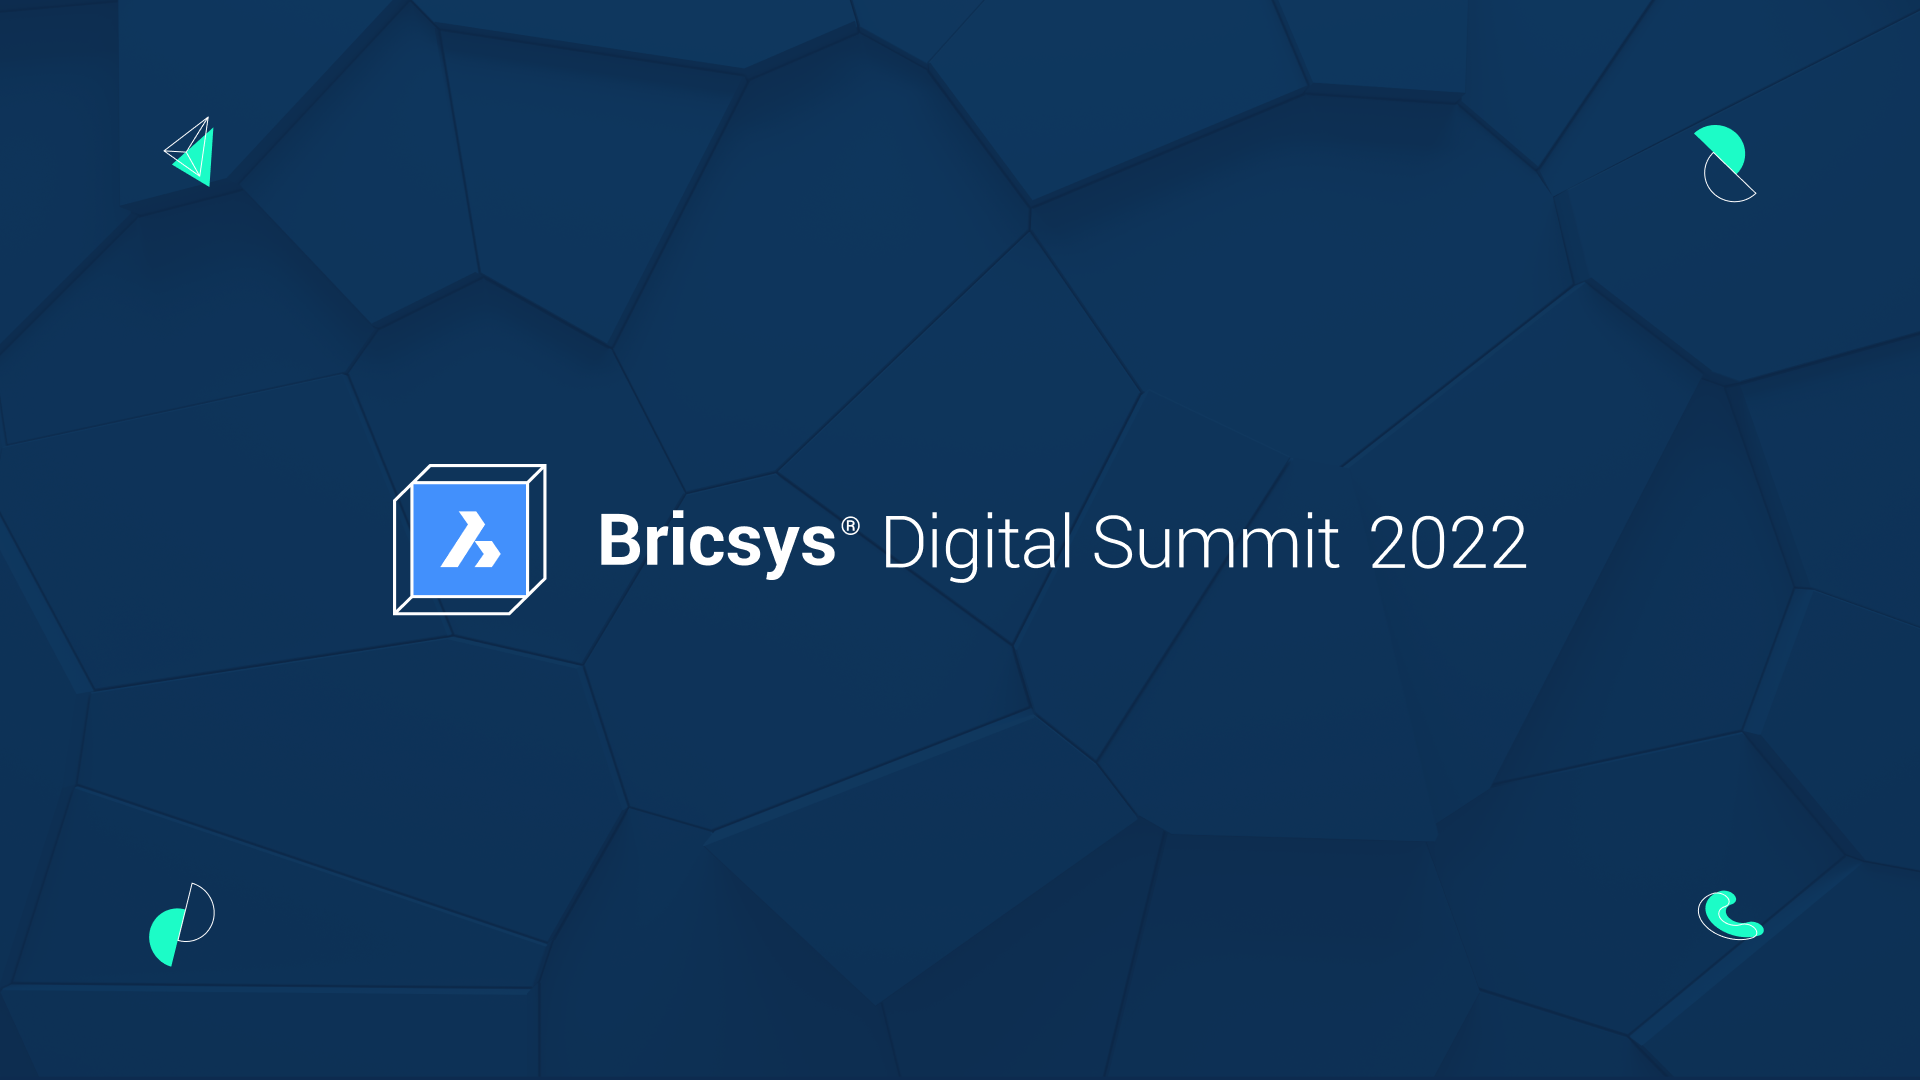 Bricsys Digital Summit 2022